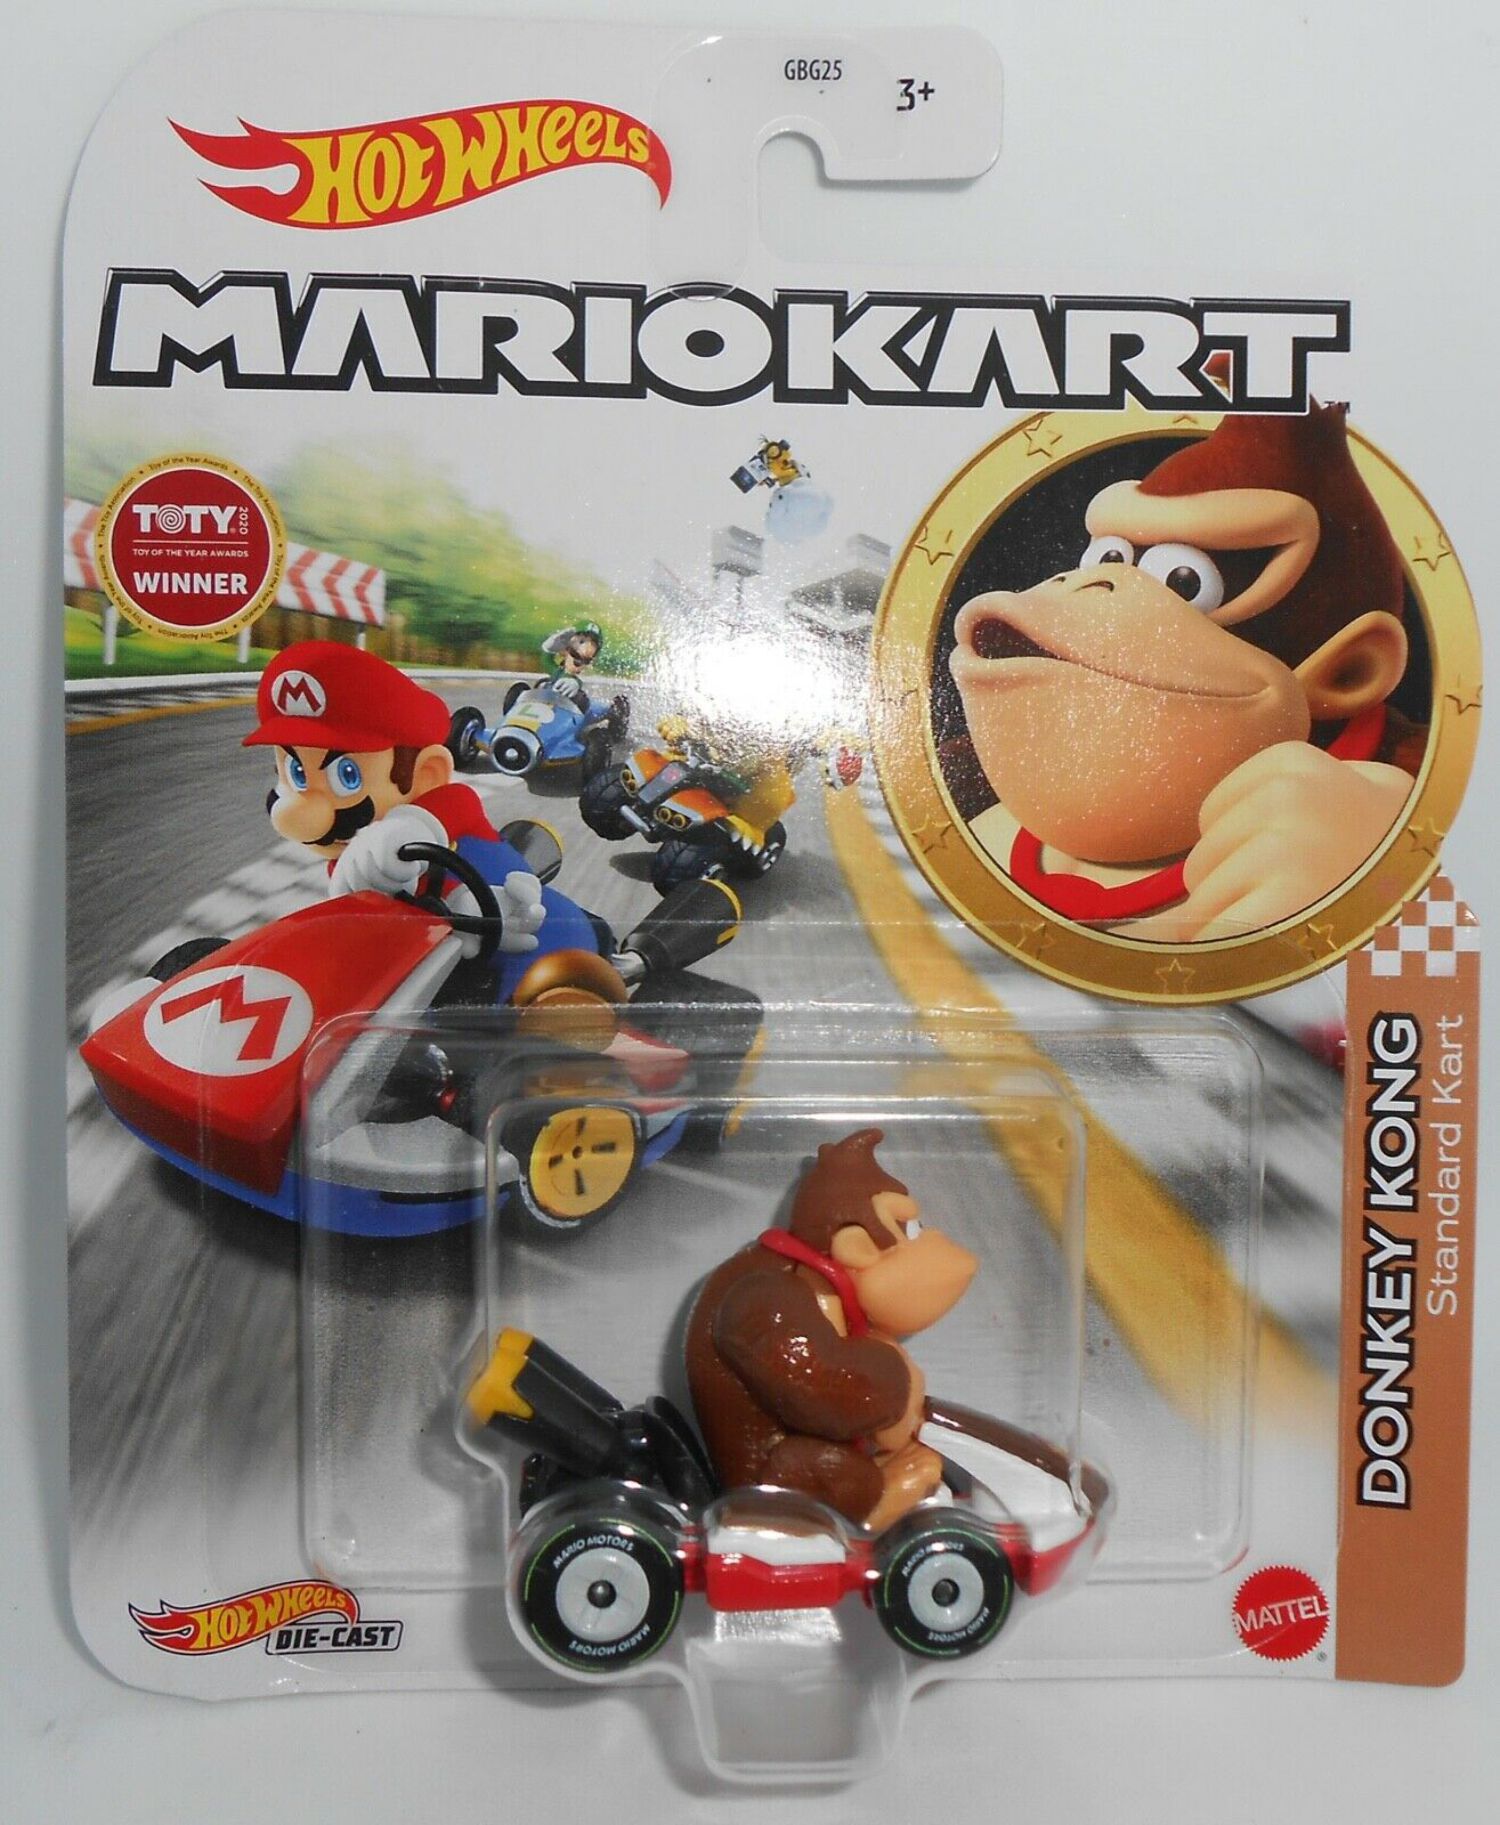 Hot Wheels Mario Kart Donkey Kong - image 1 of 3